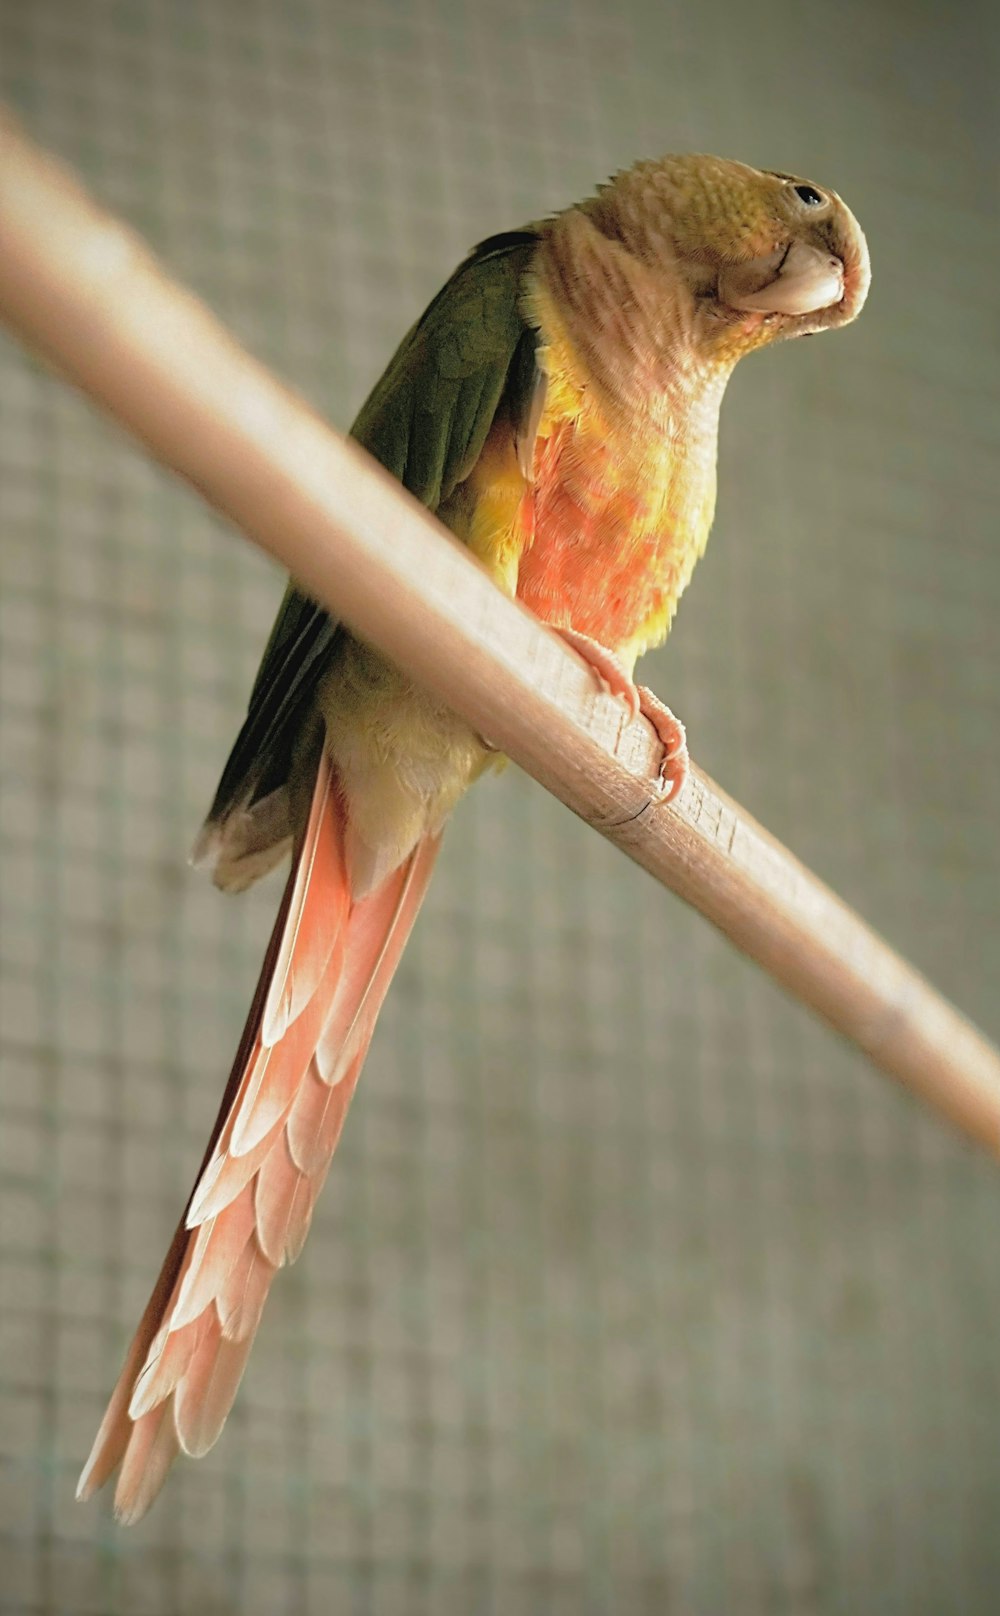 a bird with a long beak